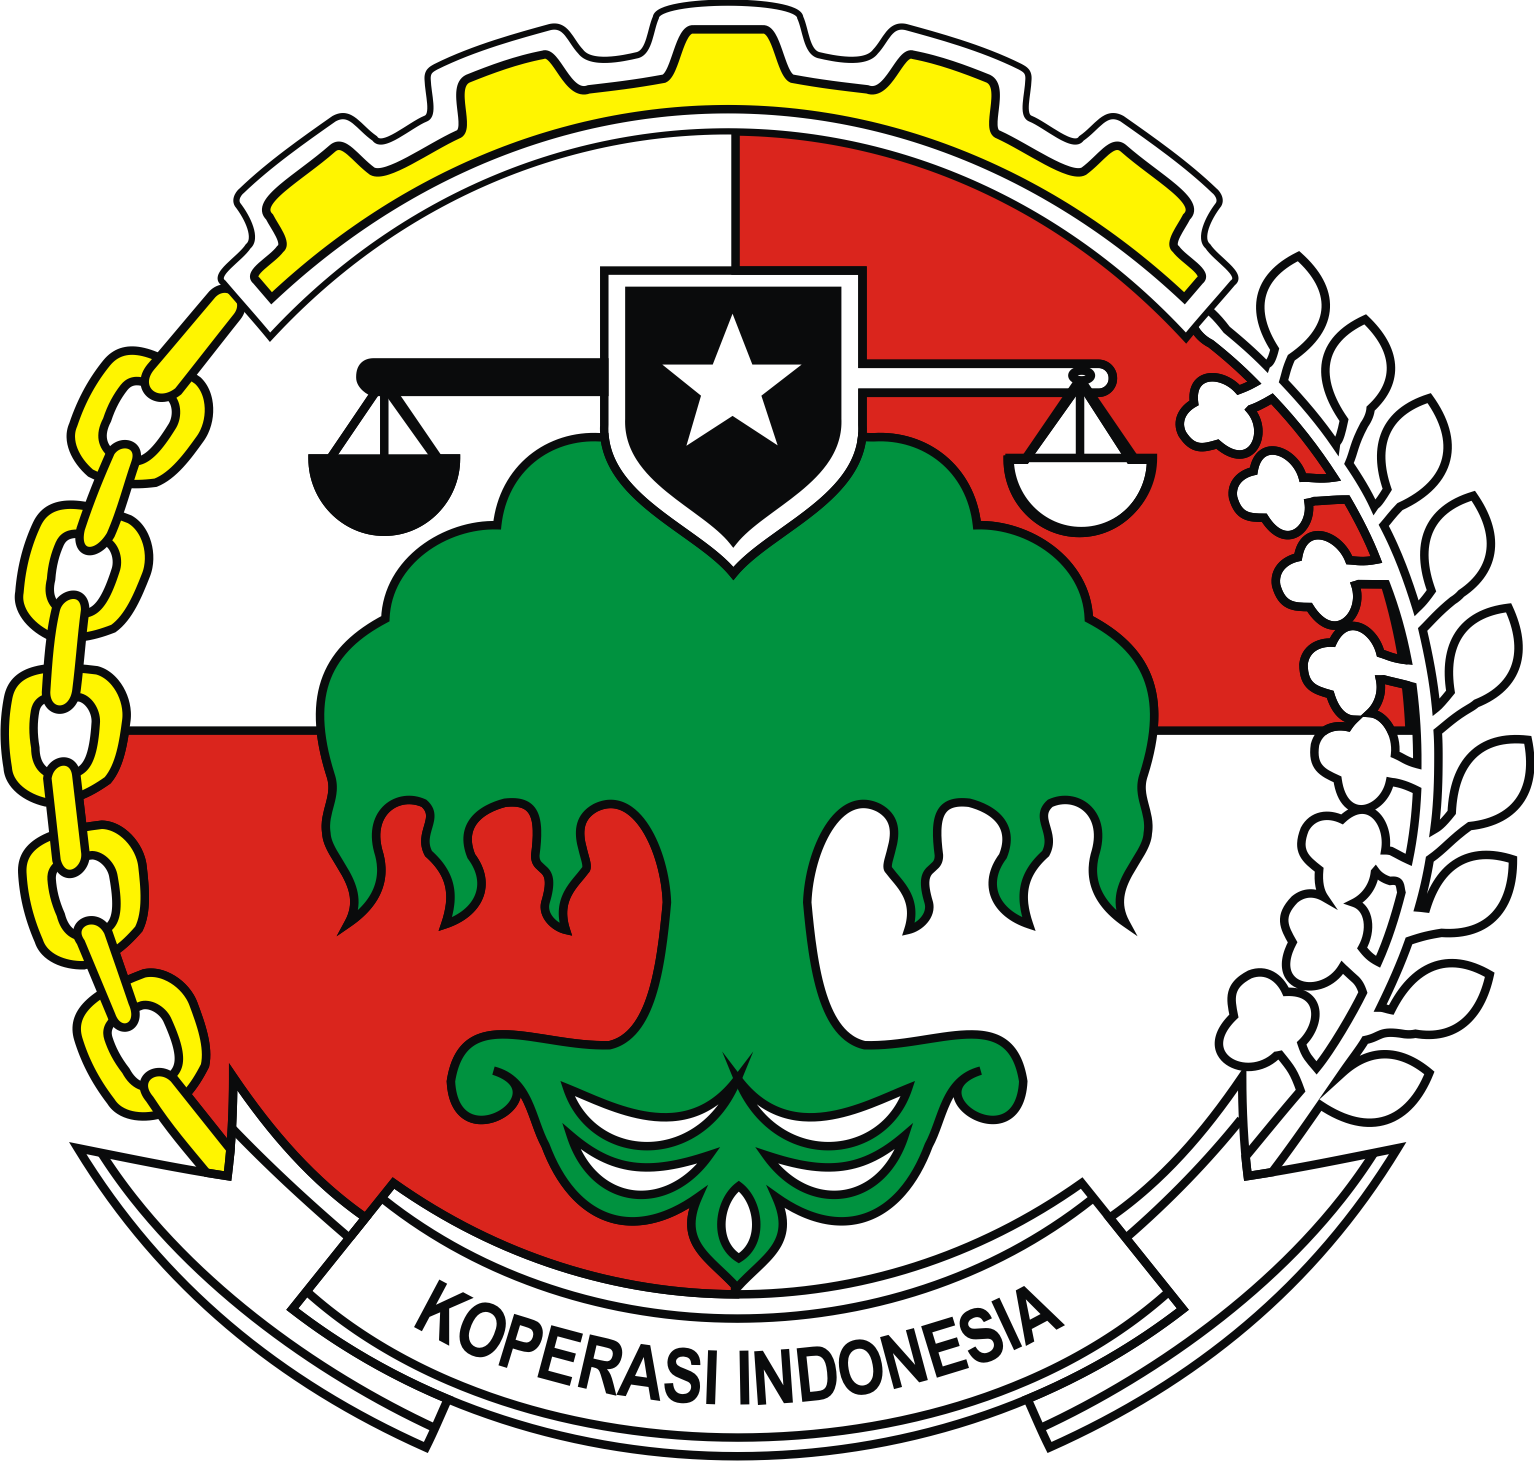 Arti dan perbedaan lambang Koperasi Indonesia | Enjangcom